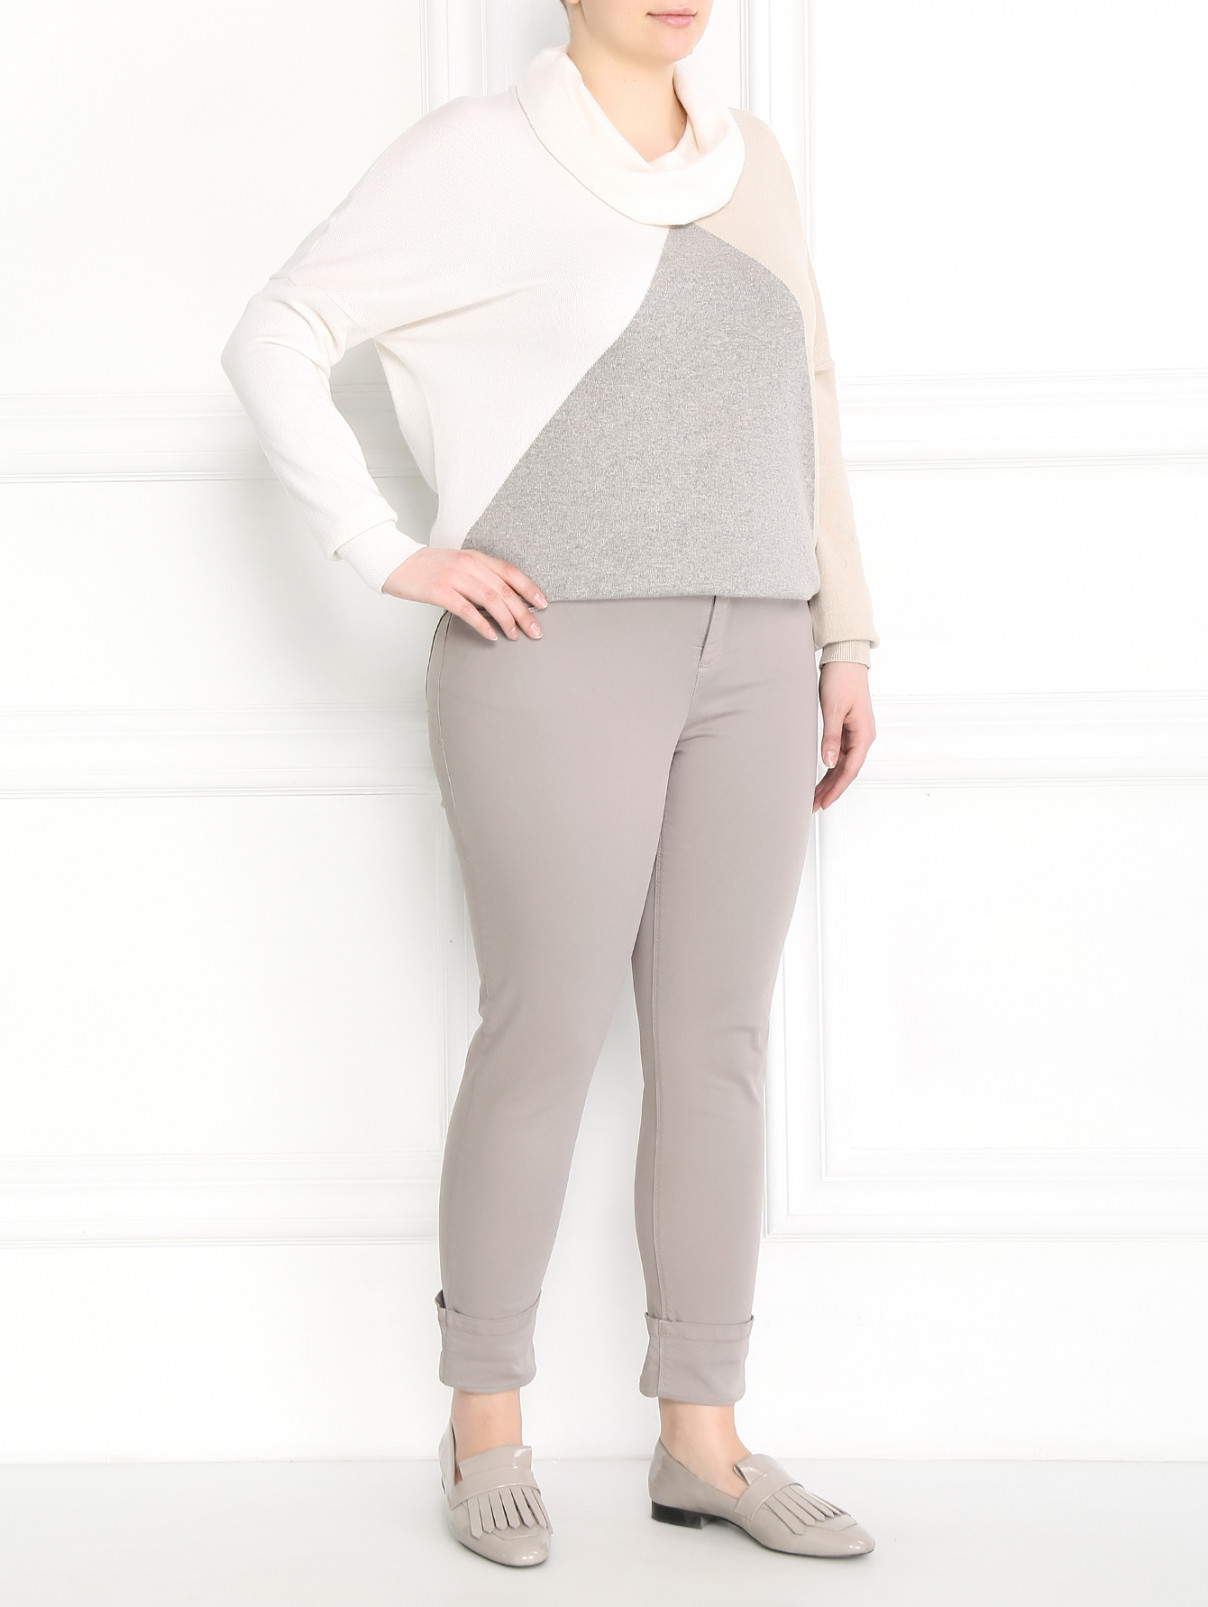 Укороченные брюки из хлопка Marina Sport  –  Модель Общий вид  – Цвет:  Серый